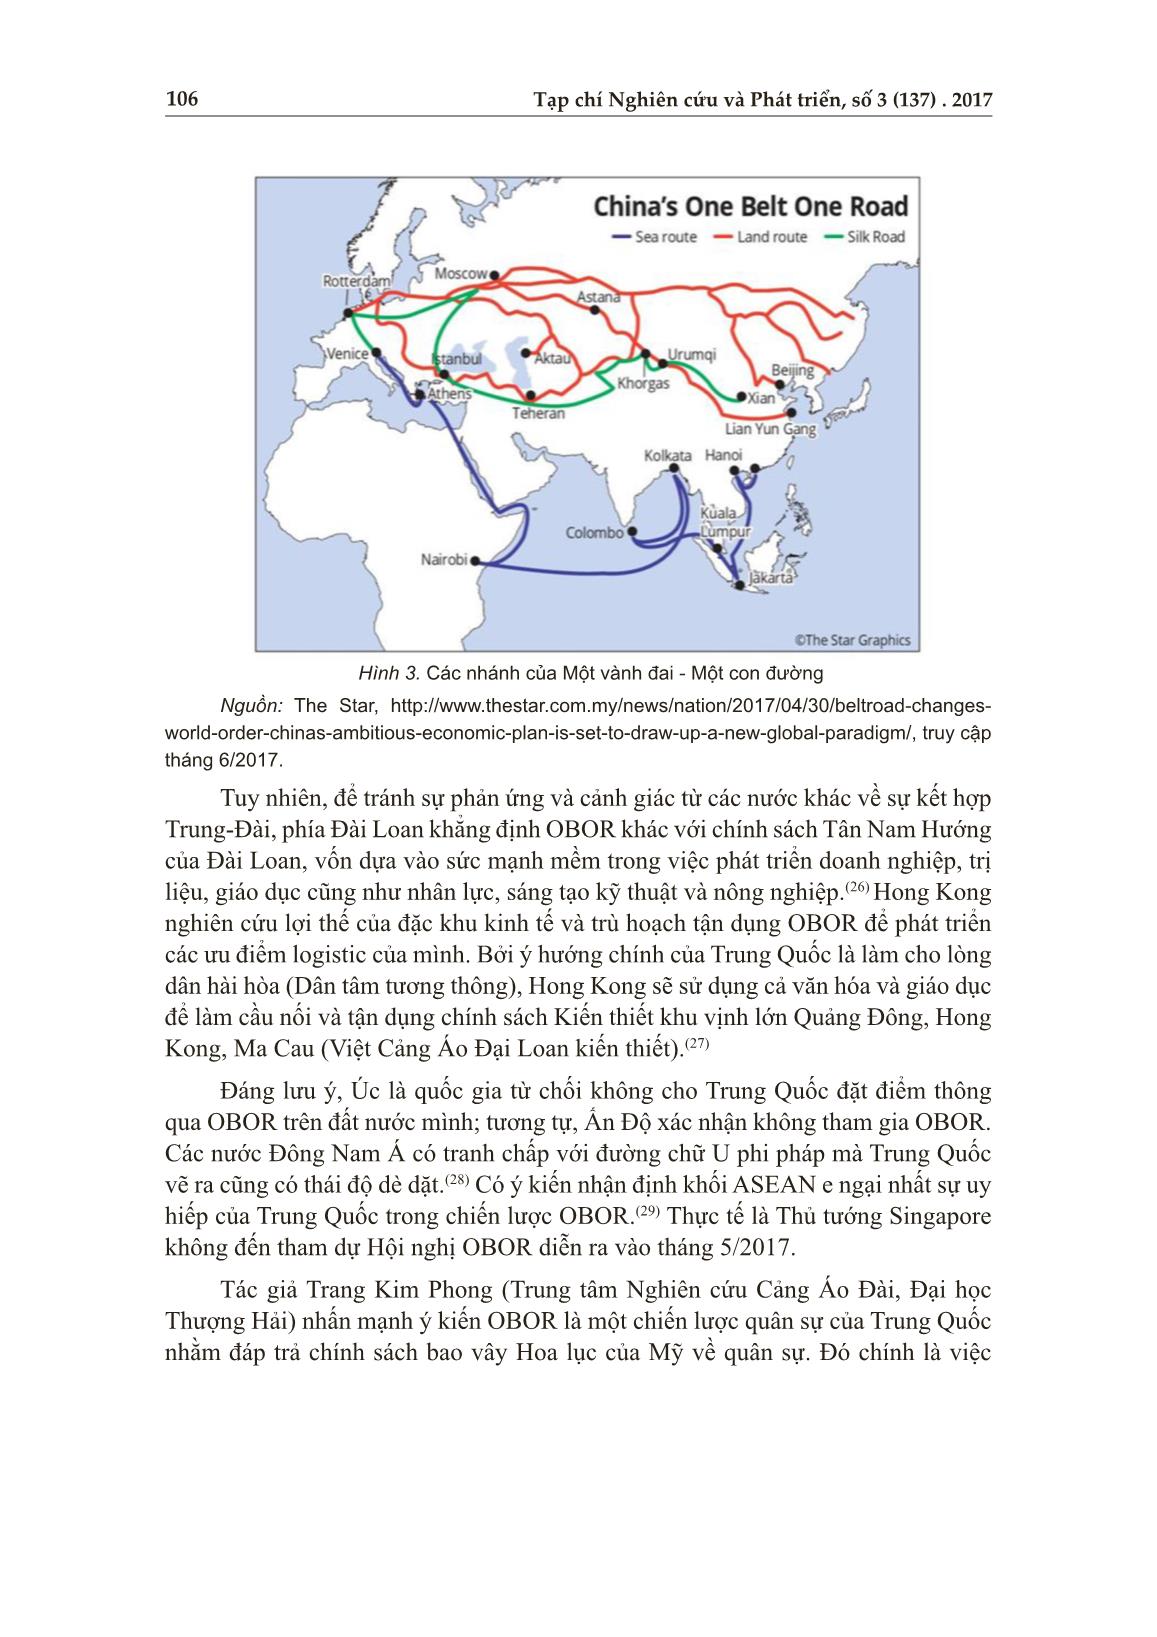 Chính sách mới của Tập Cận Bình và “Một vành đai - Một con đường” trang 8